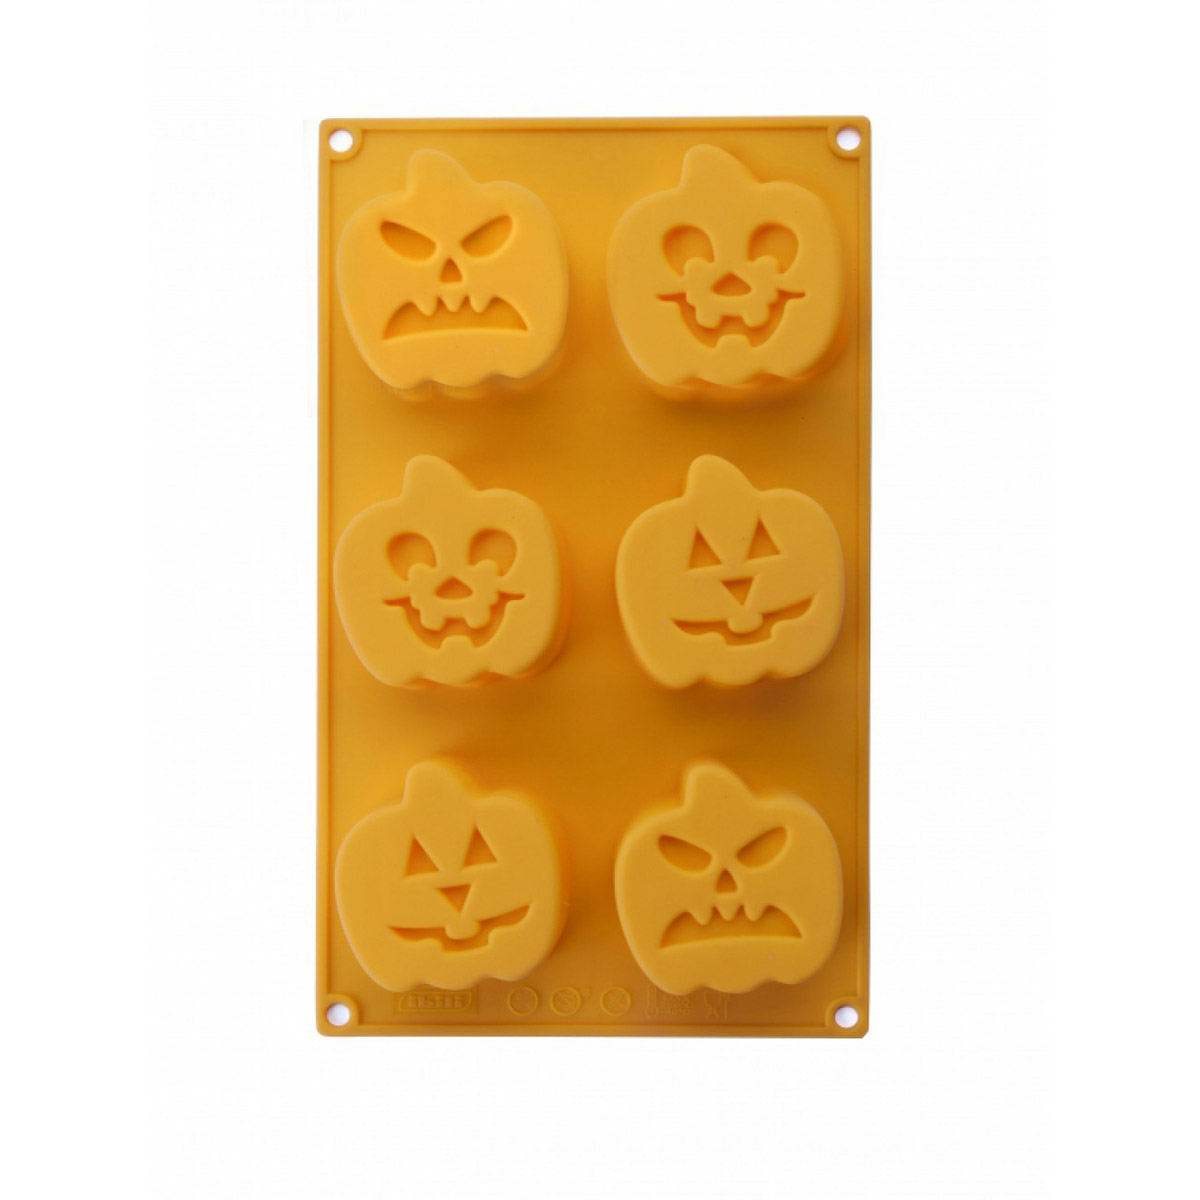 Форма за сладки с дизайн на тикви за Хелоуин IBILI IB 872500, 6 форми, Силикон, Жълт